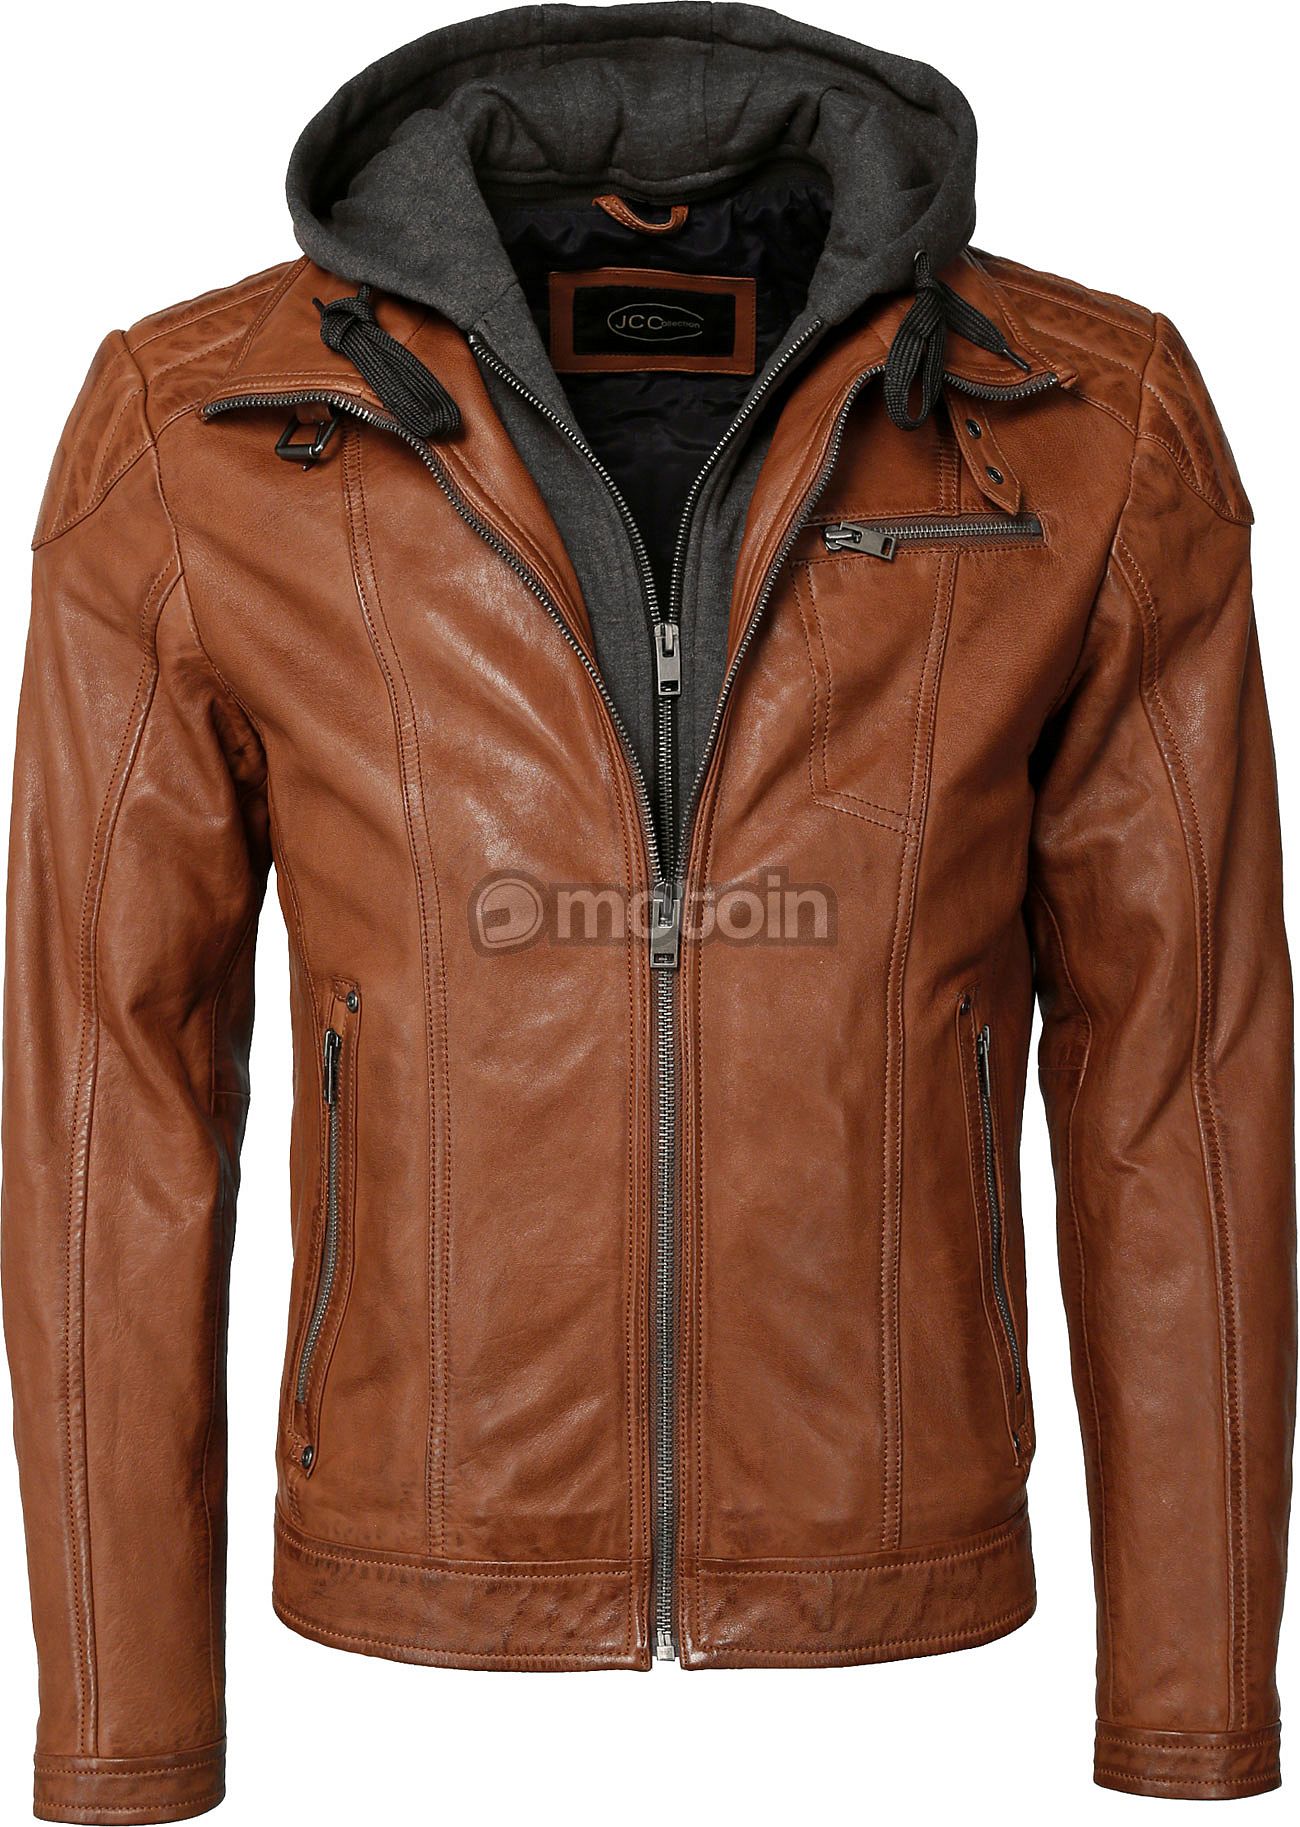 Nappa, jacket Lamb leather JCC